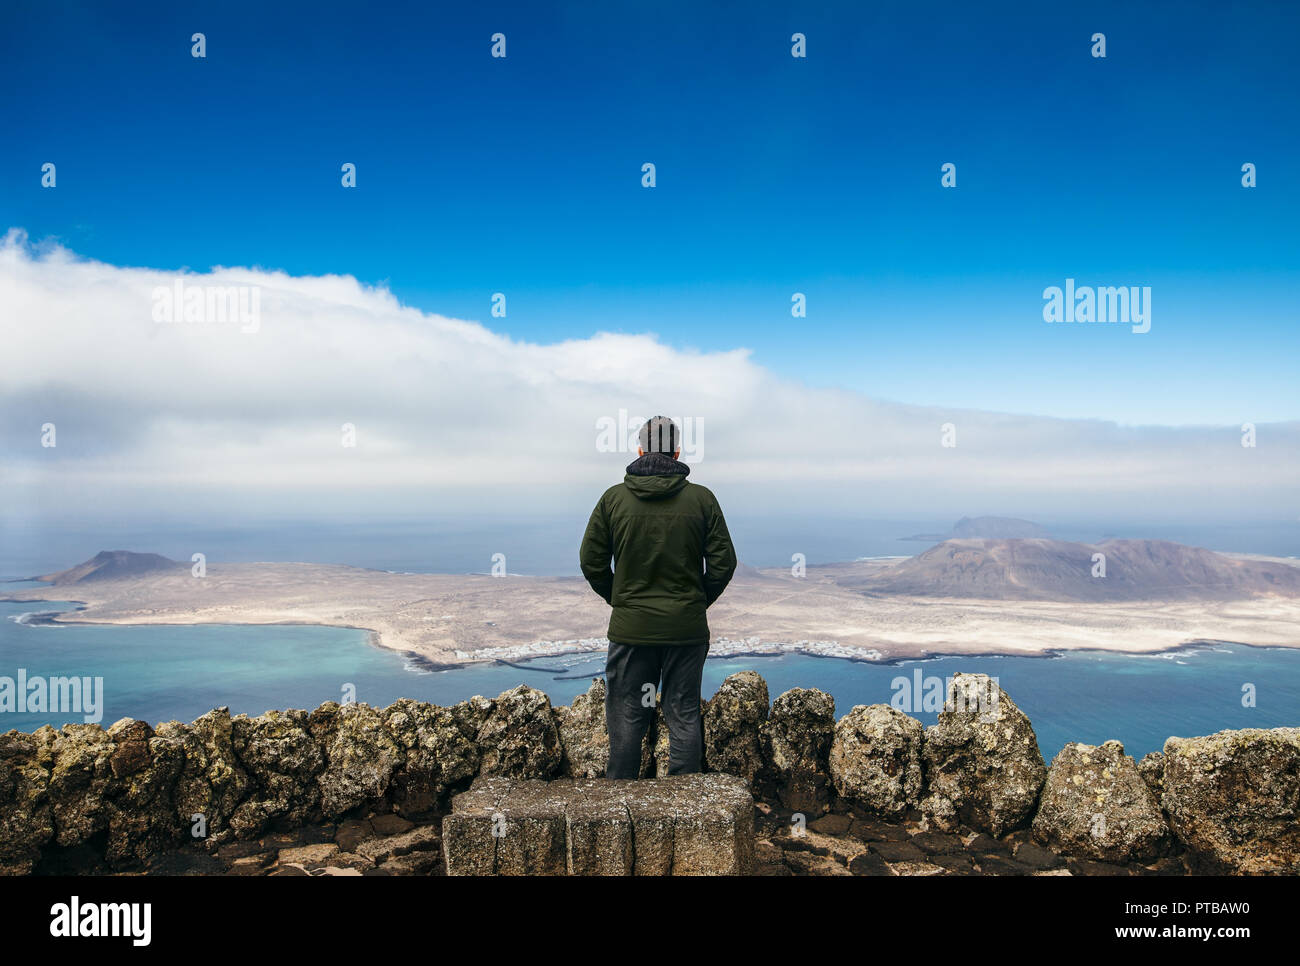 Traveler uomo godendo di bellissimi paesaggi marini a viewpoint sull isola. Concetto di viaggio. Inverno nelle isole Canarie. Foto Stock